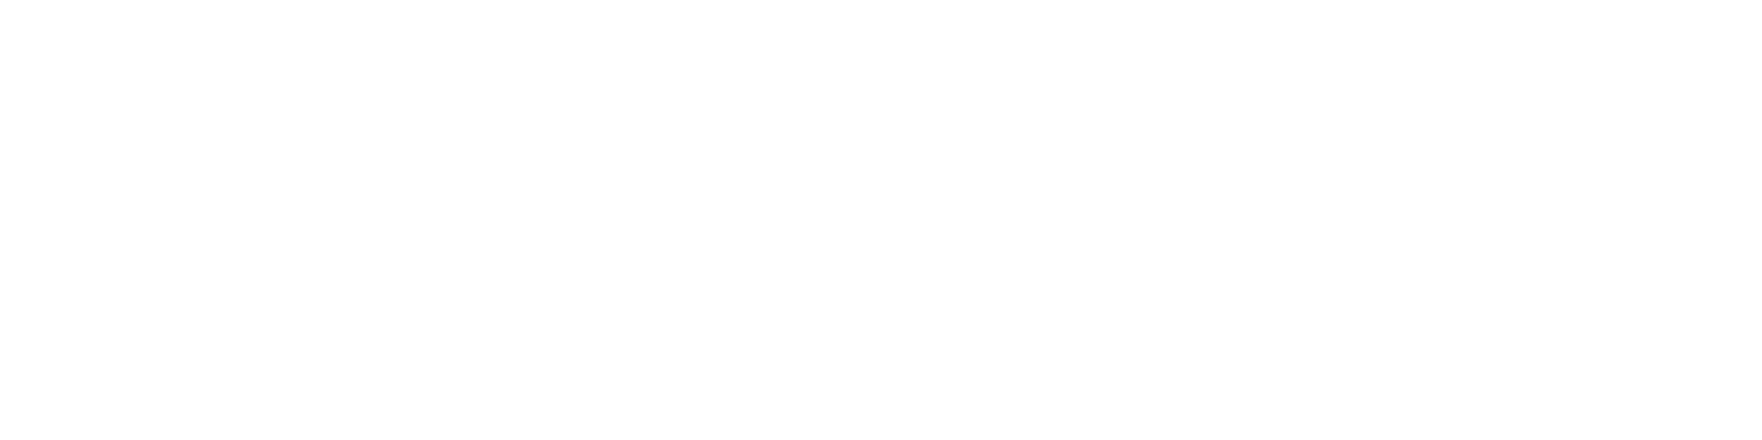 NACS Foundation Main logo